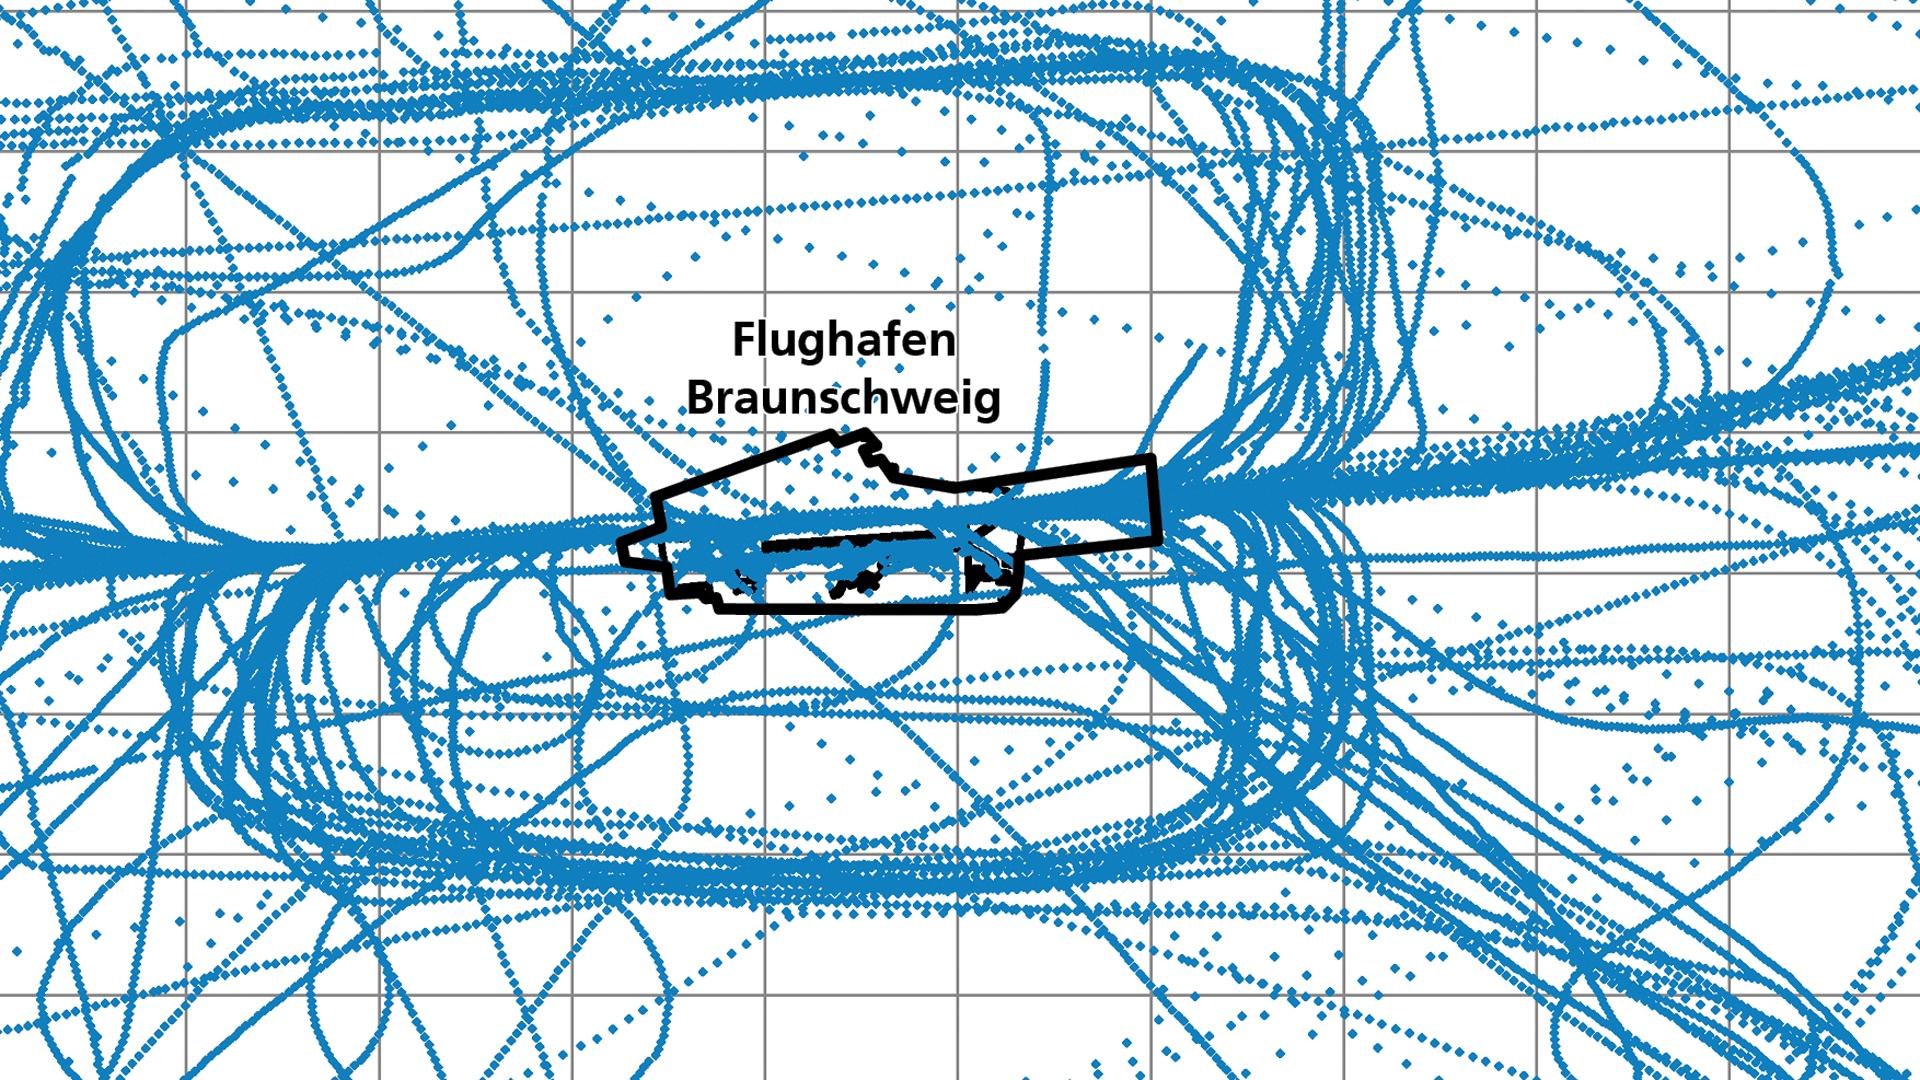 Aircraft movements